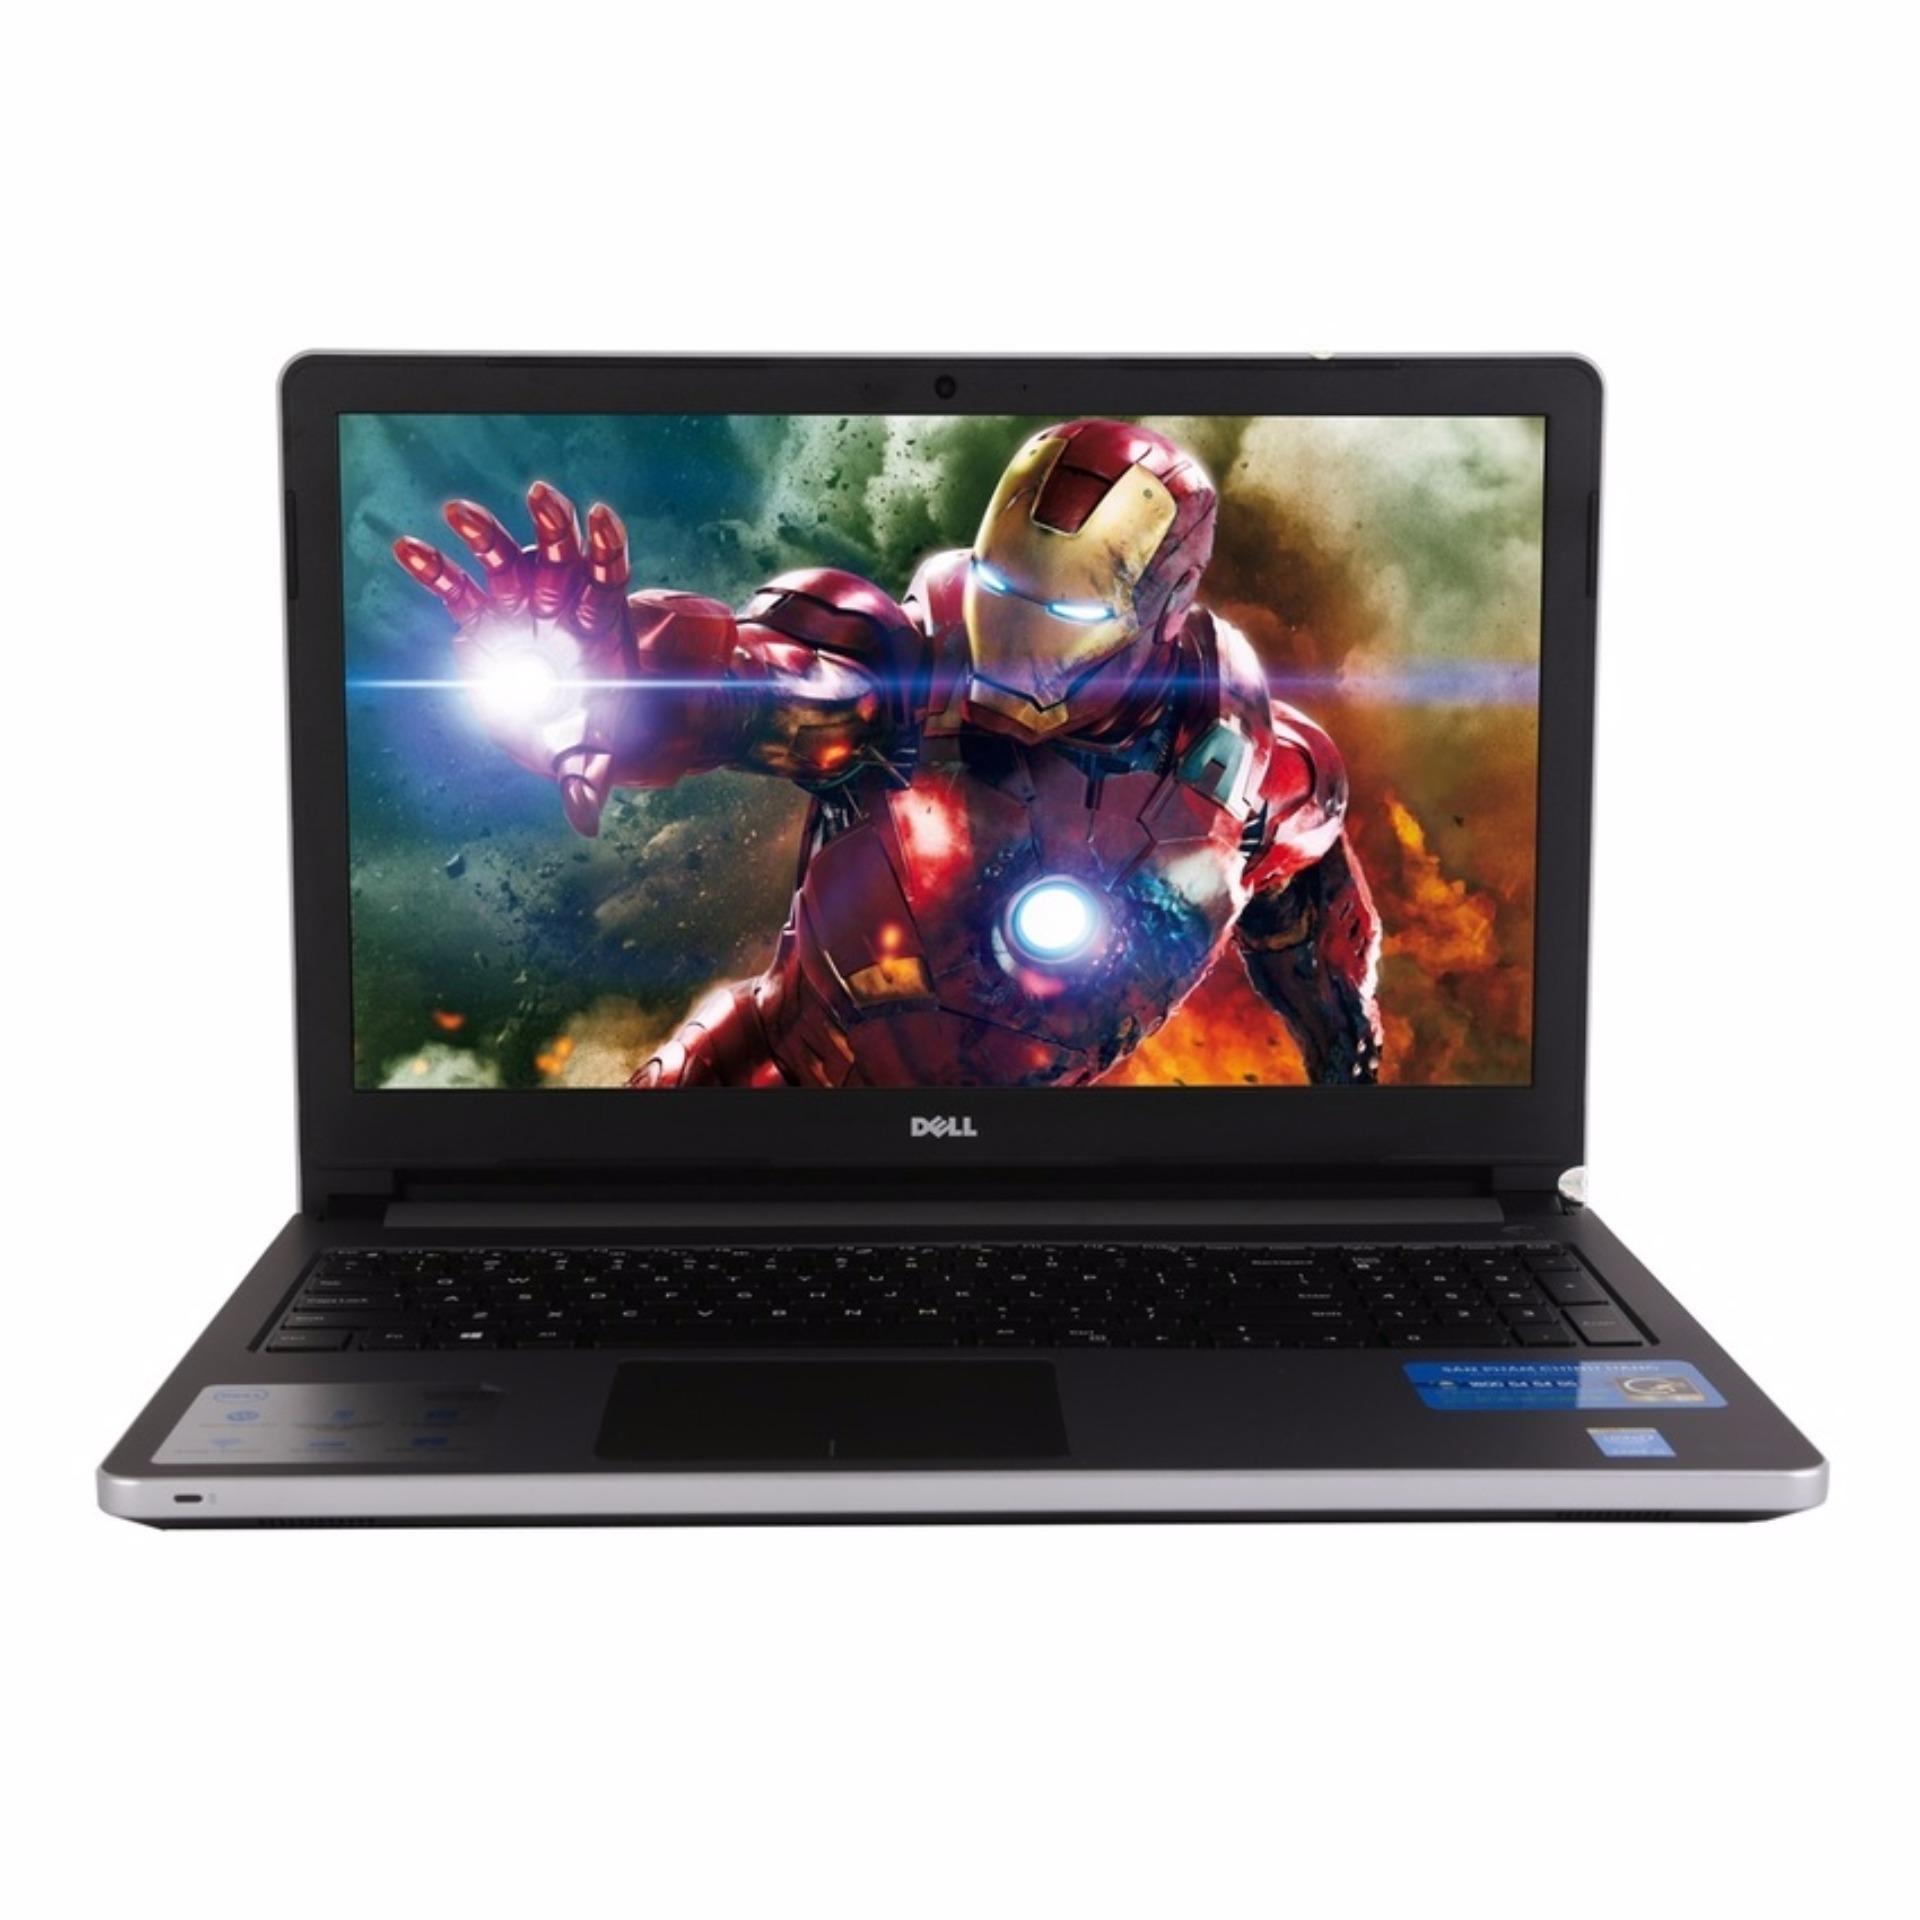 Laptop Dell inspiron 5559 i7 6500U 16G 1TB VGA 4G Màn 15.6 HD Bạc - hàng nhập khẩu